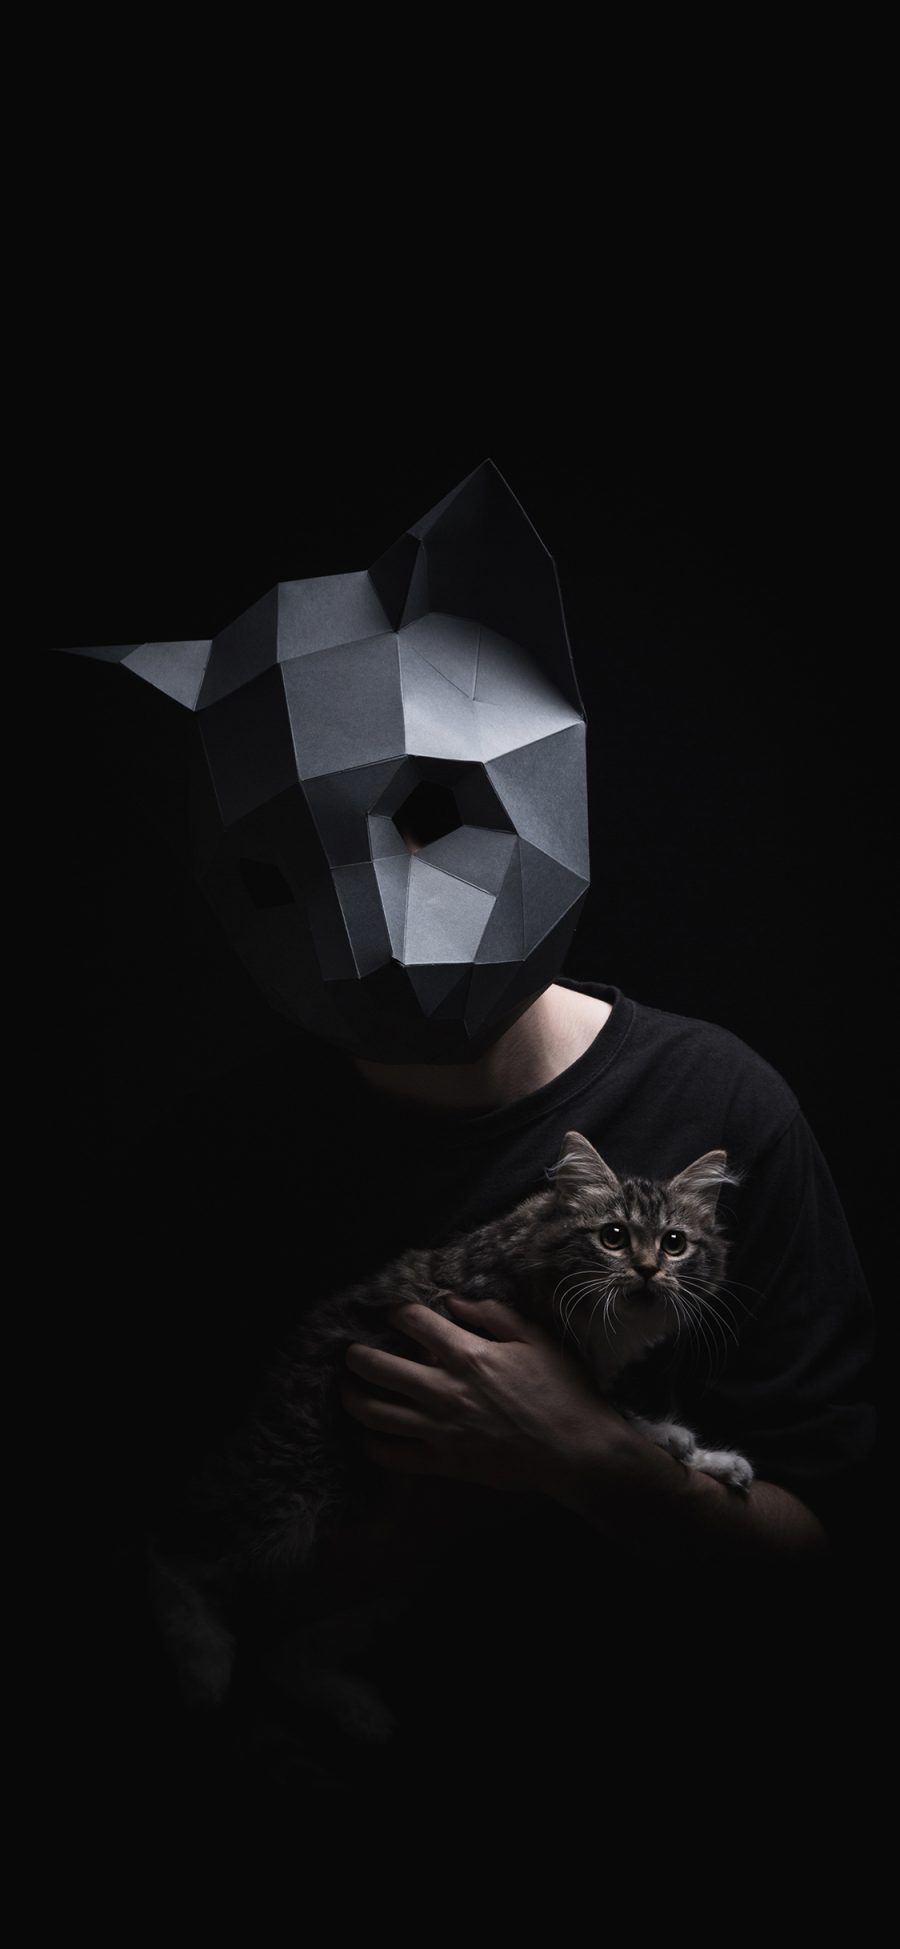 [2436×1125]面具 几何 写真 猫咪 苹果手机壁纸图片